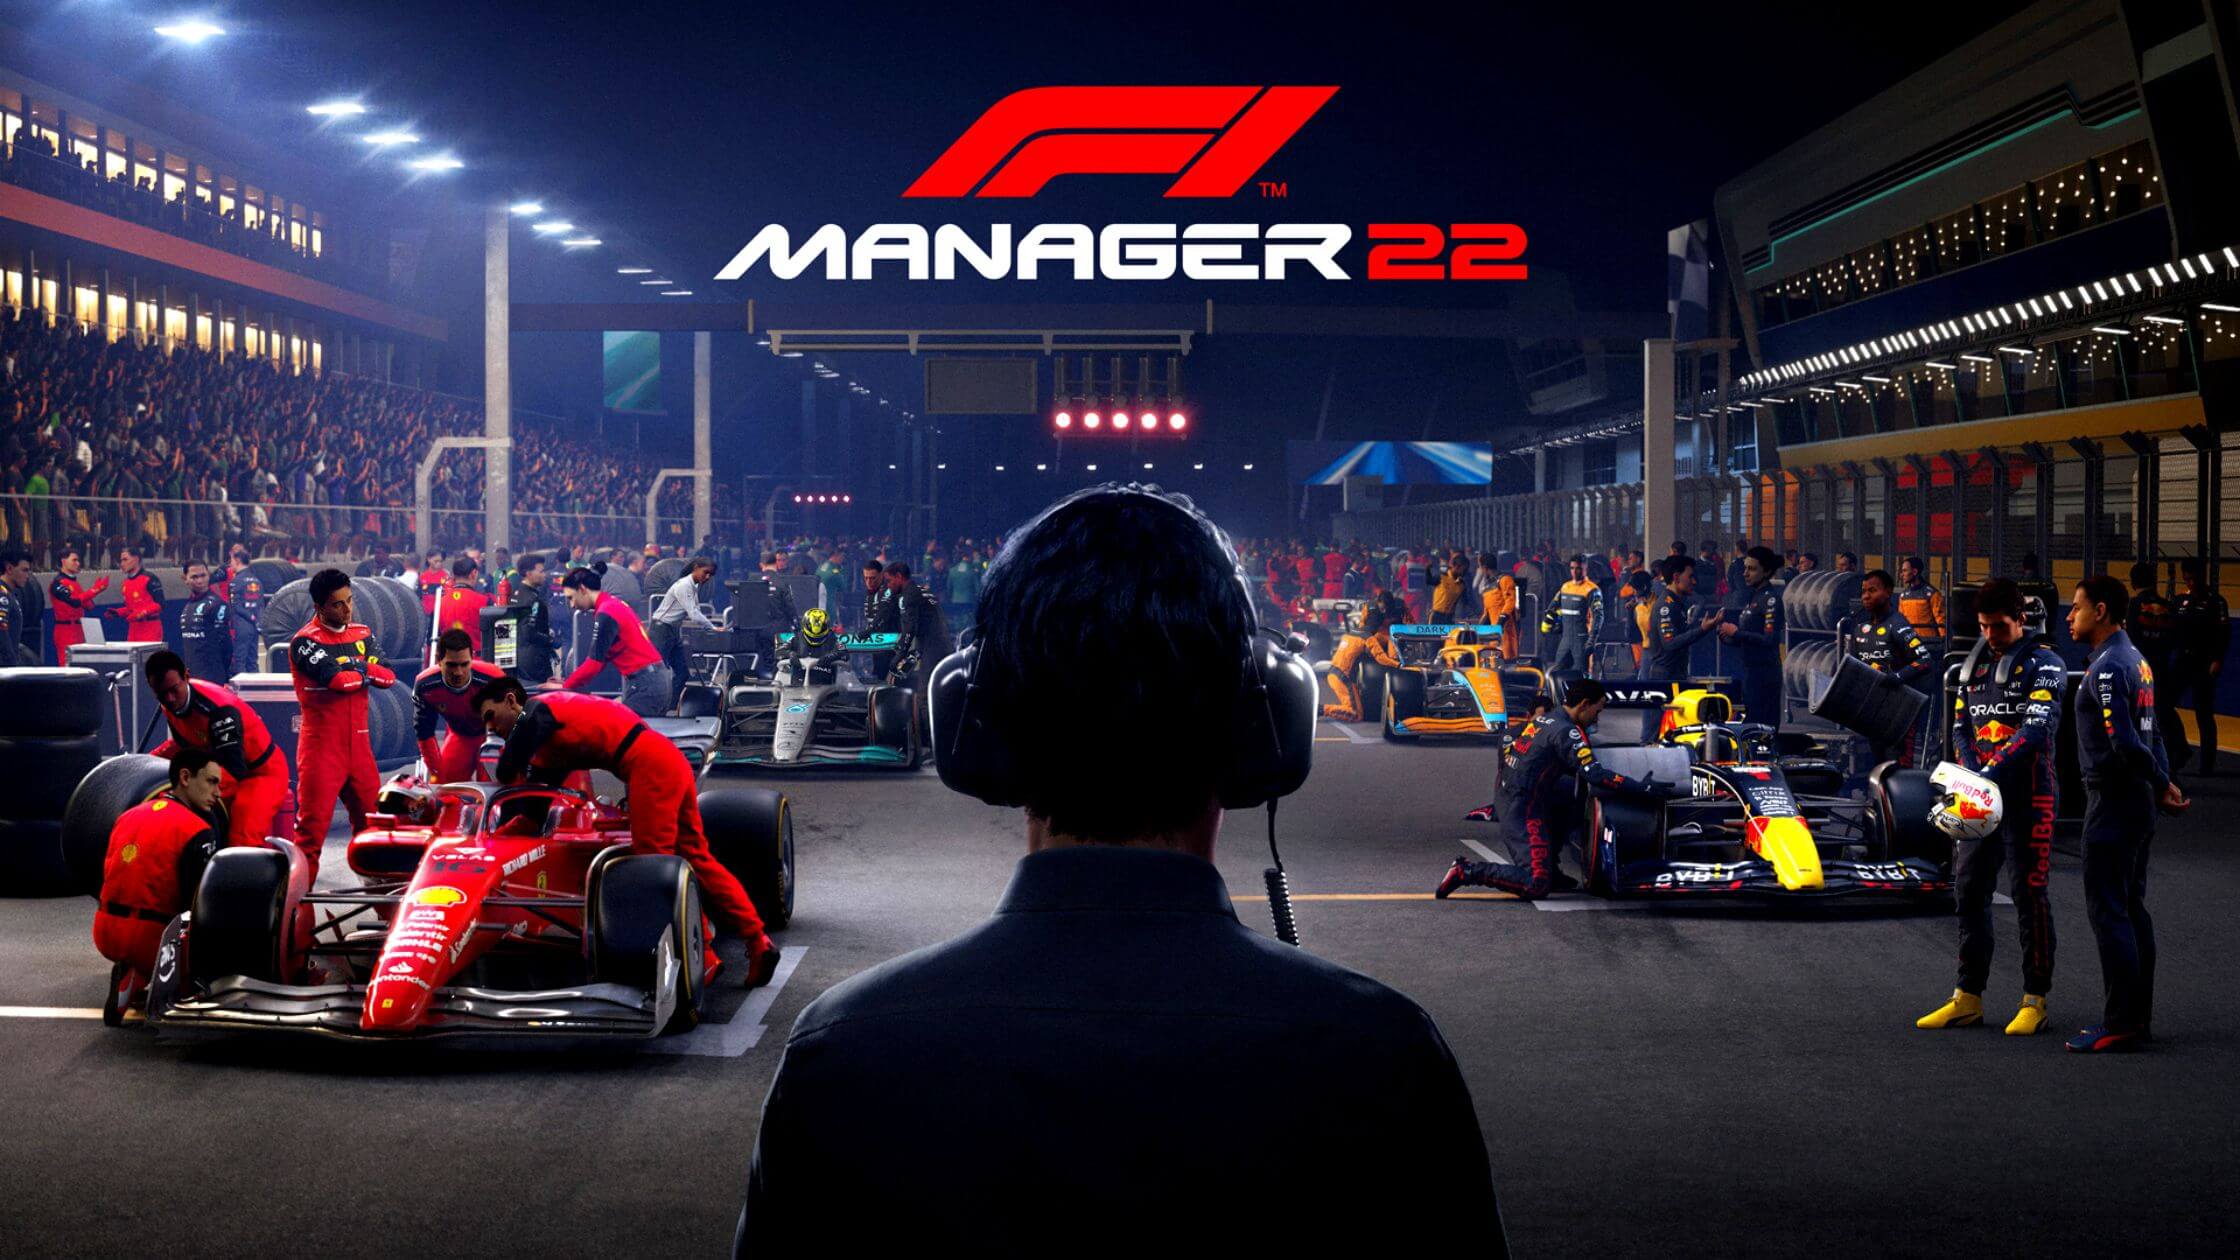 F1 Manager 2022 Frontier finaliza el soporte solo dos meses despues del lanzamiento 1 1